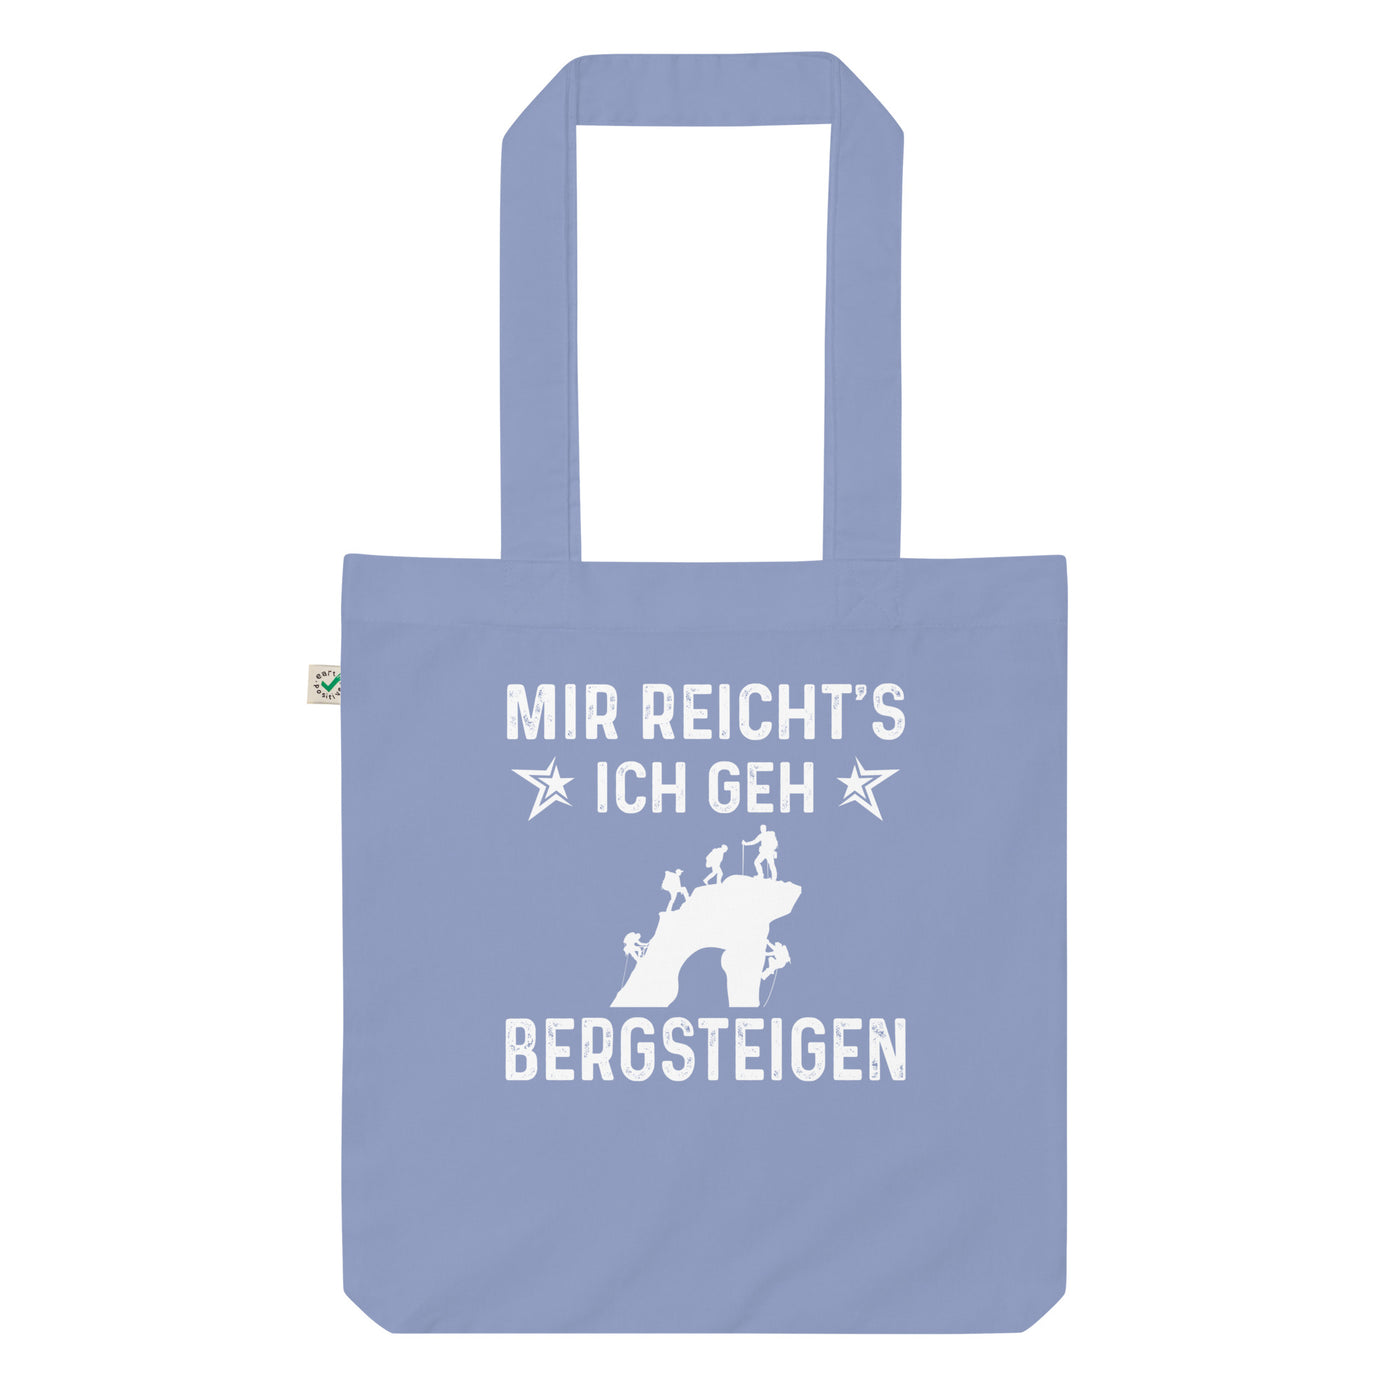 Mir Reicht'S Ich Gen Bergsteigen - Organic Einkaufstasche klettern Light Denim